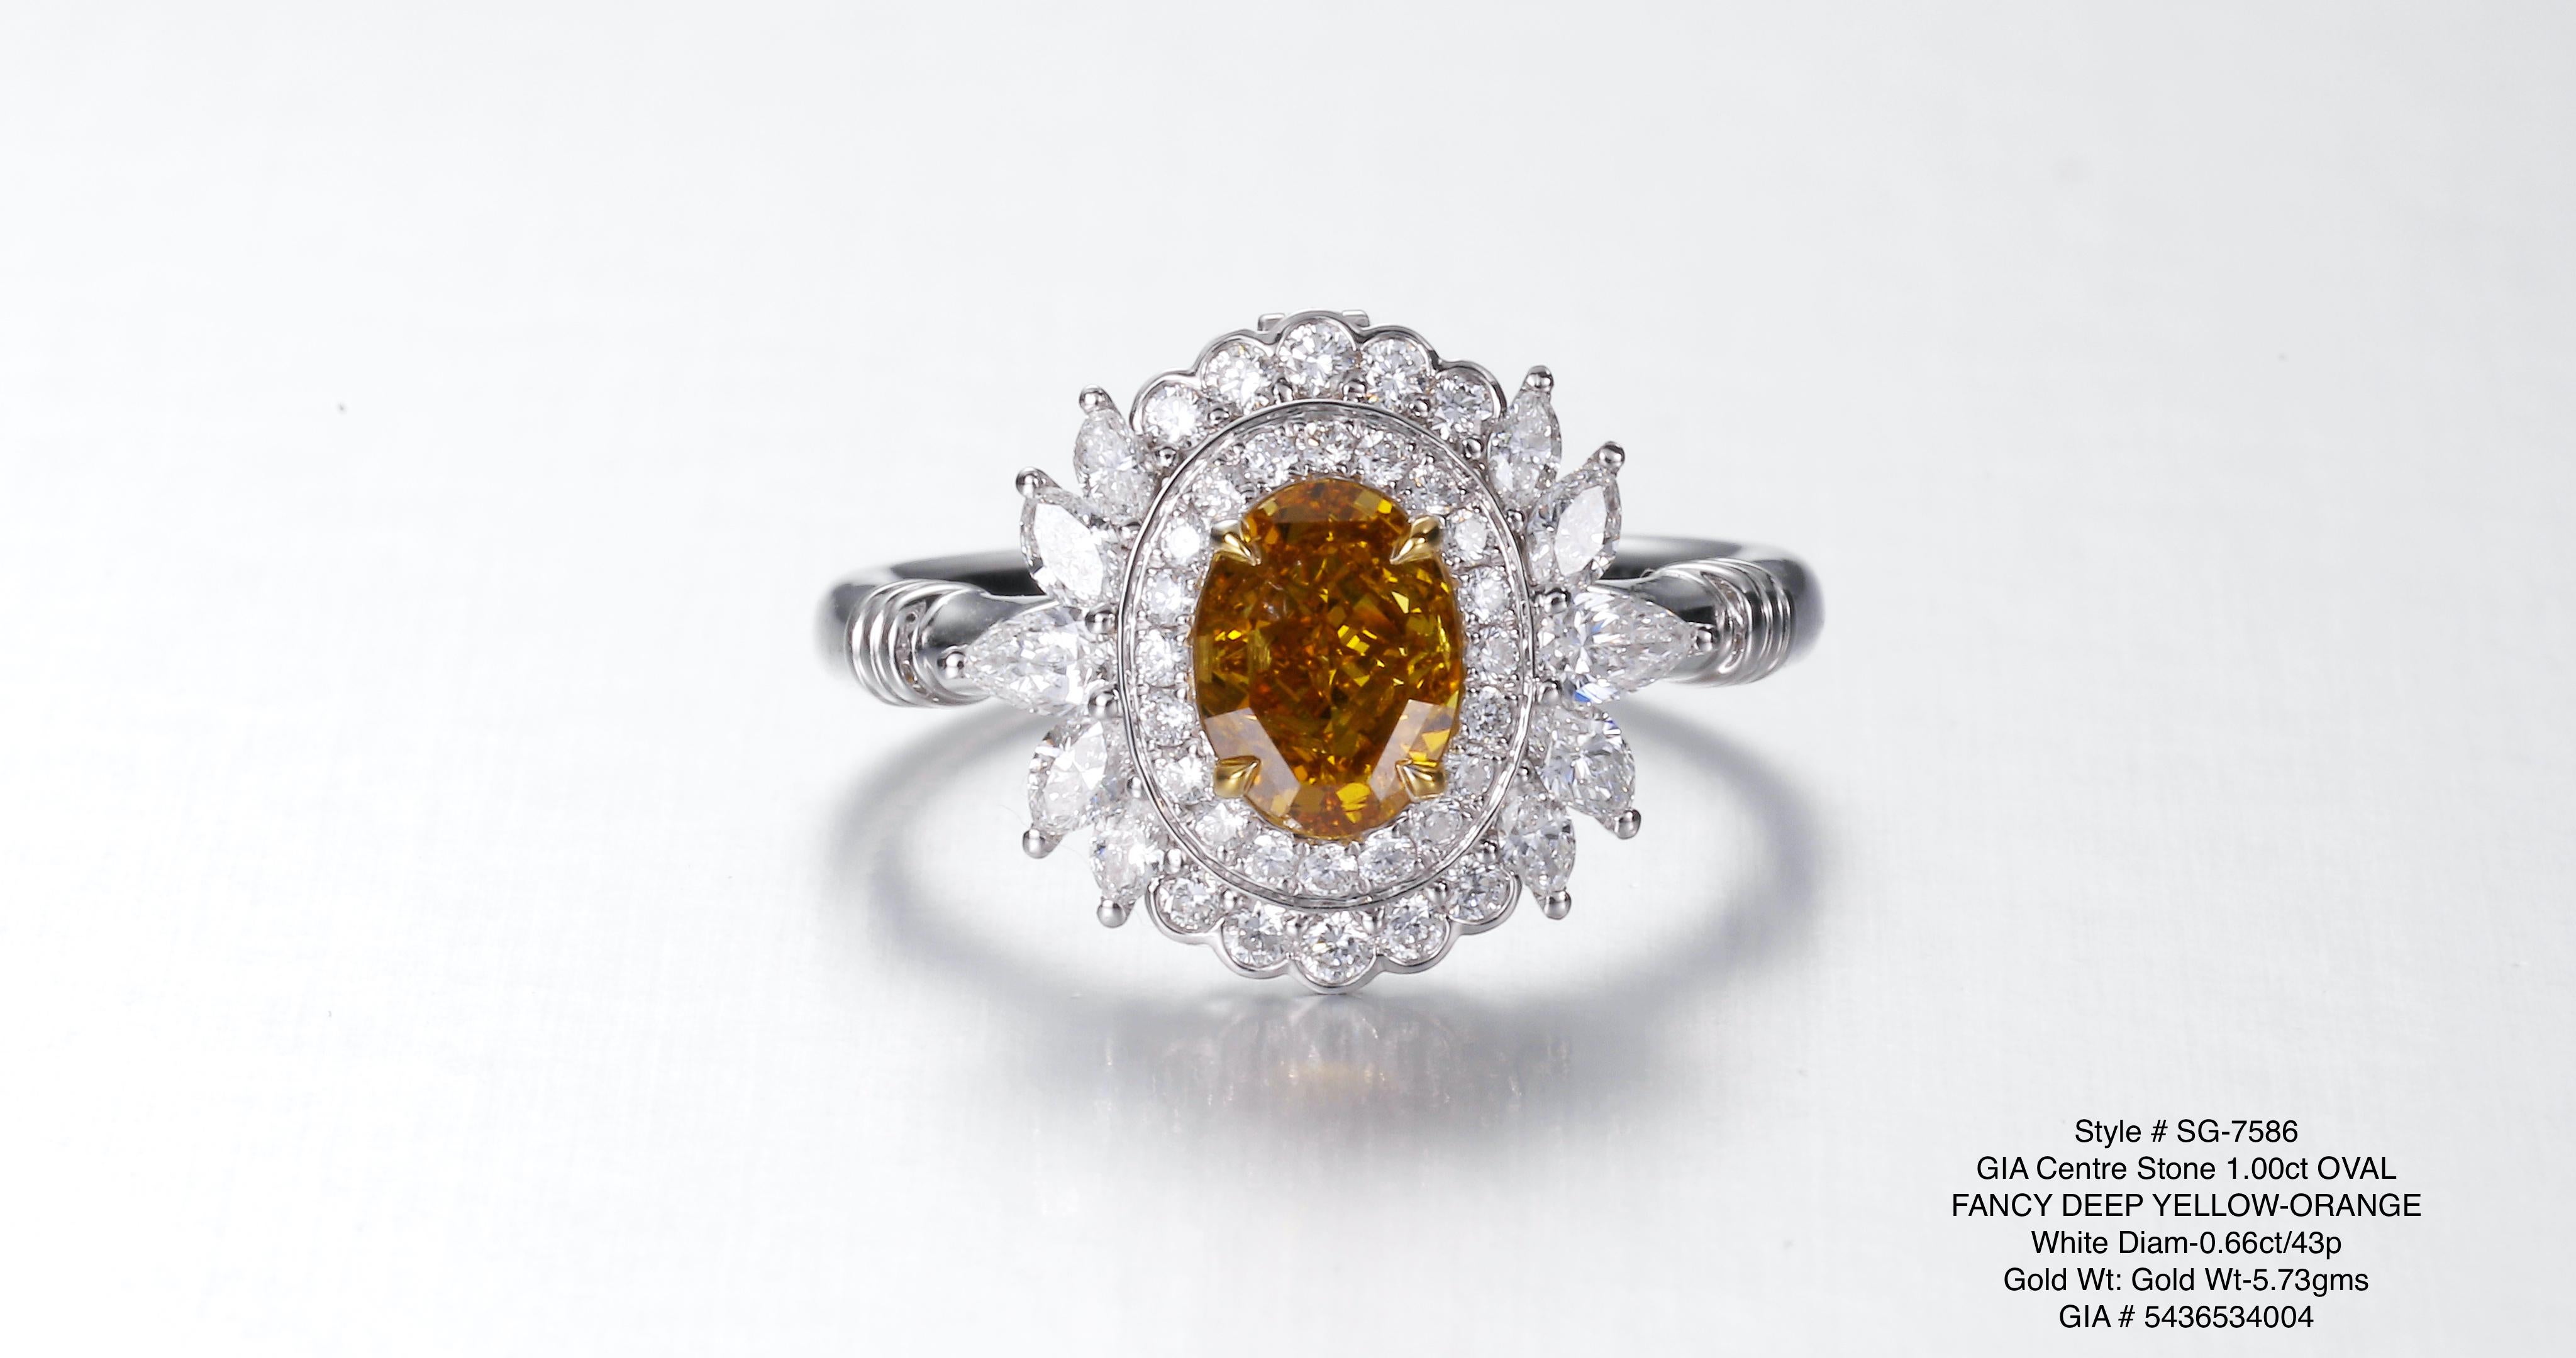 Im Mittelpunkt dieses atemberaubenden Rings steht der bemerkenswerte 1,00ct GIA-zertifizierte, natürliche, tiefgelbe orangefarbene Diamant, der für seine intensiven und lebendigen Farbtöne bekannt ist. Seine warmen und feurigen Töne strahlen Energie